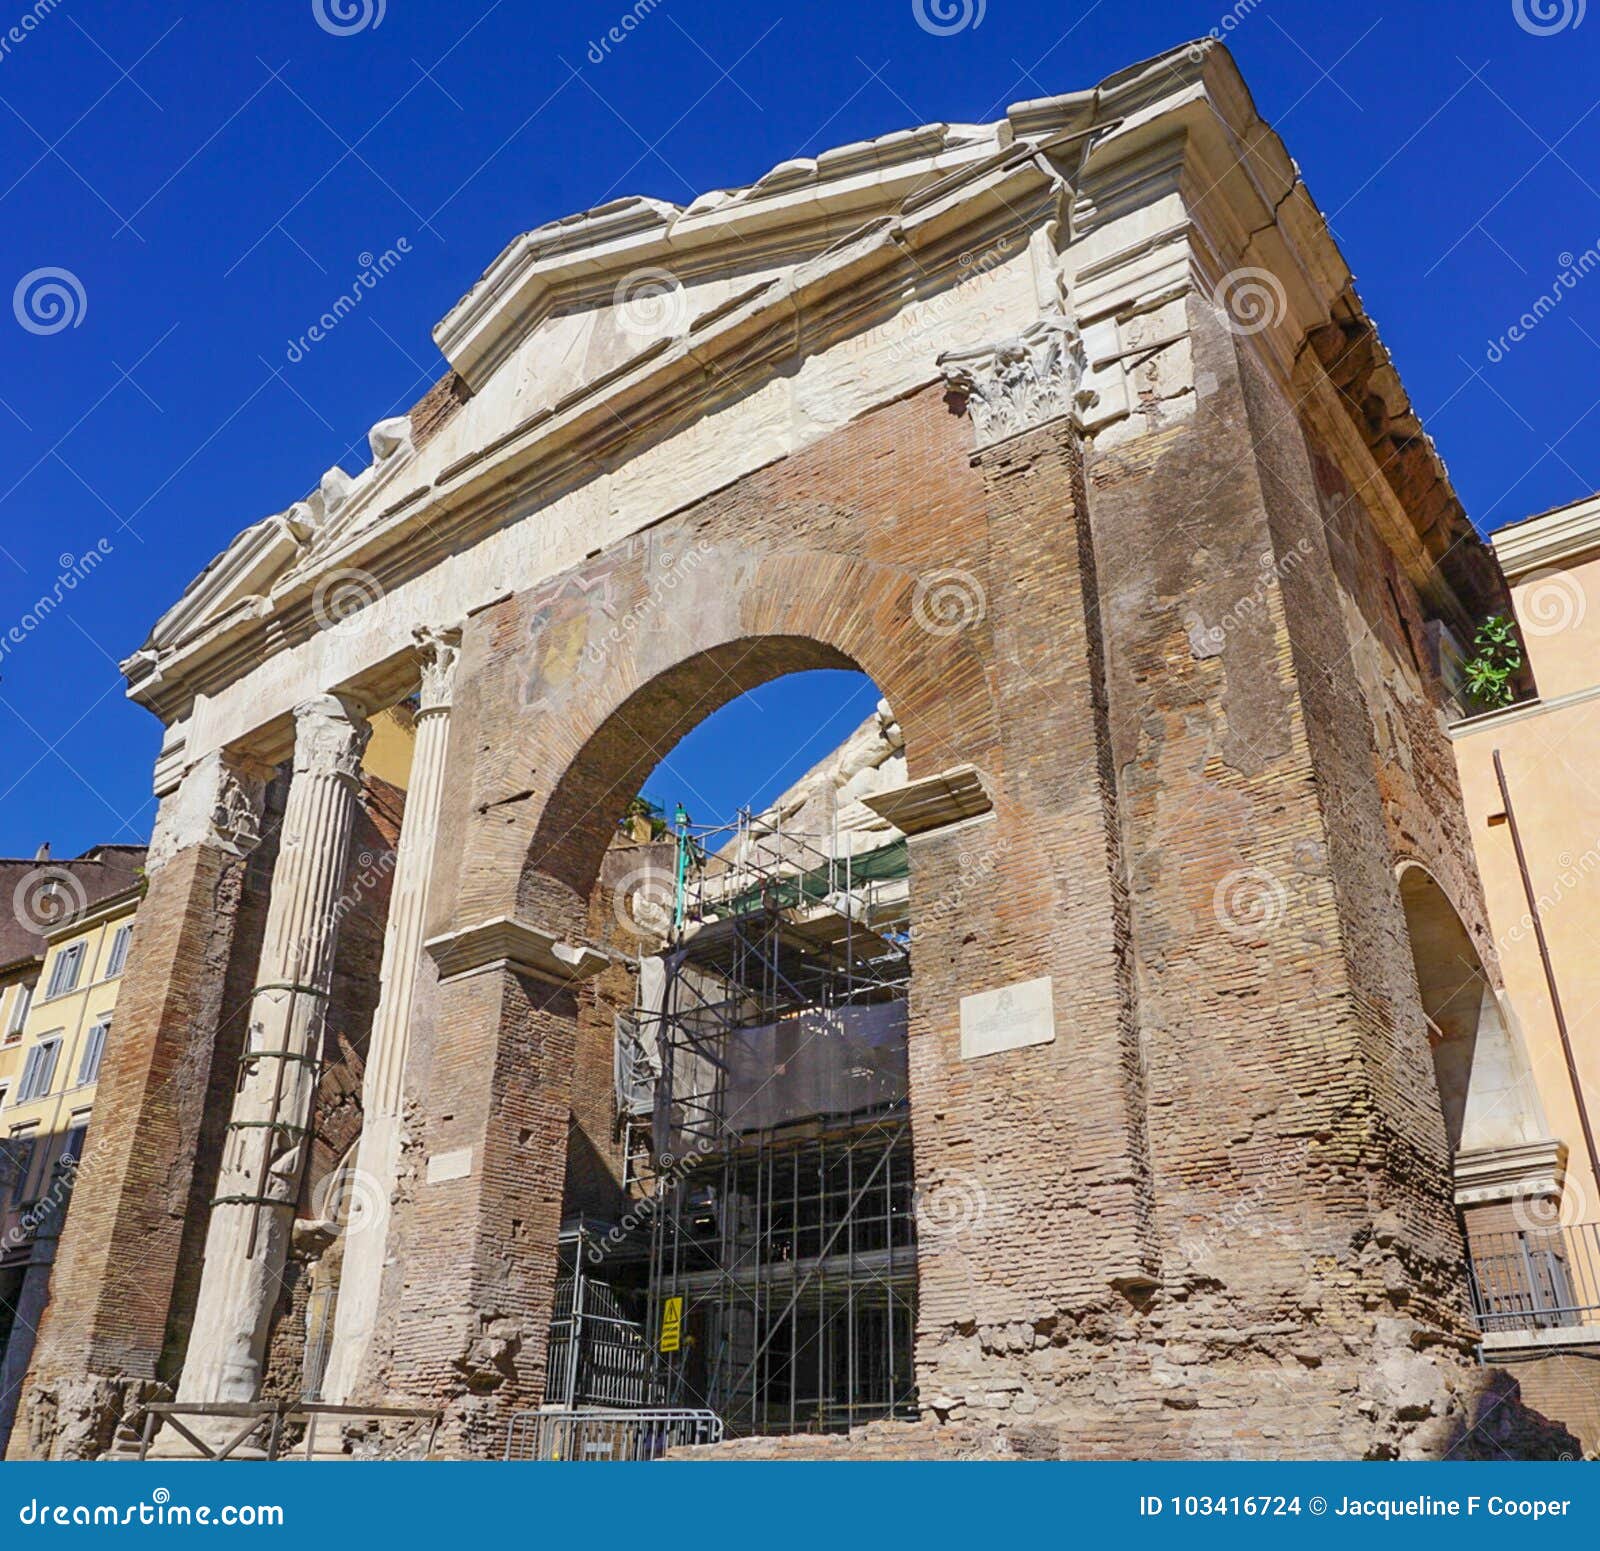 teatro marcello and portico d`ottavia in rome italy